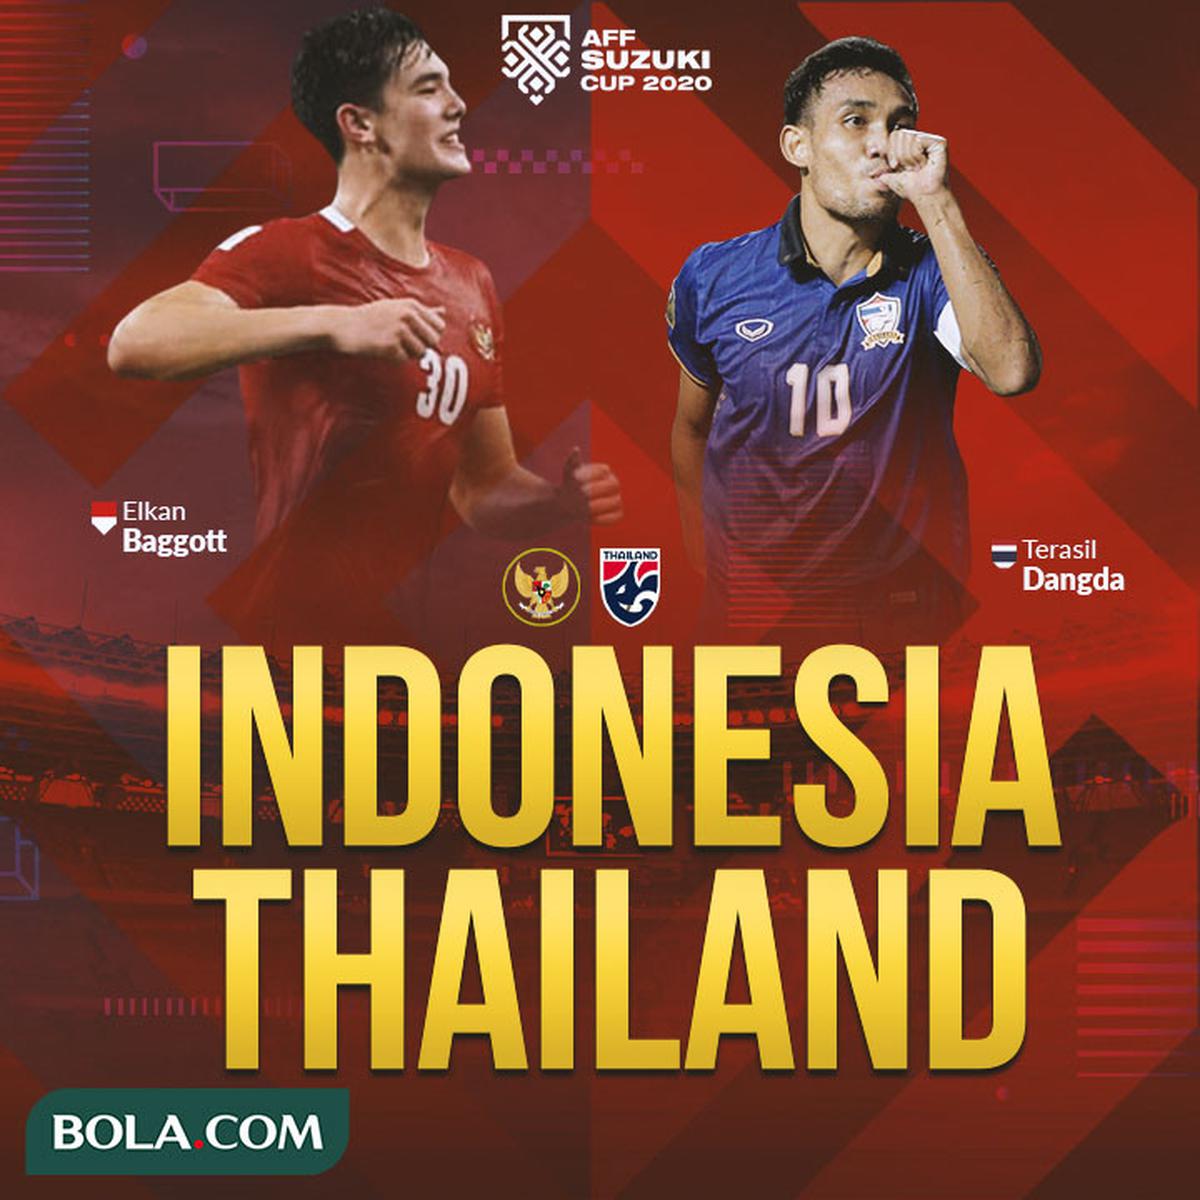 Indonesia vs thailand aff 2021